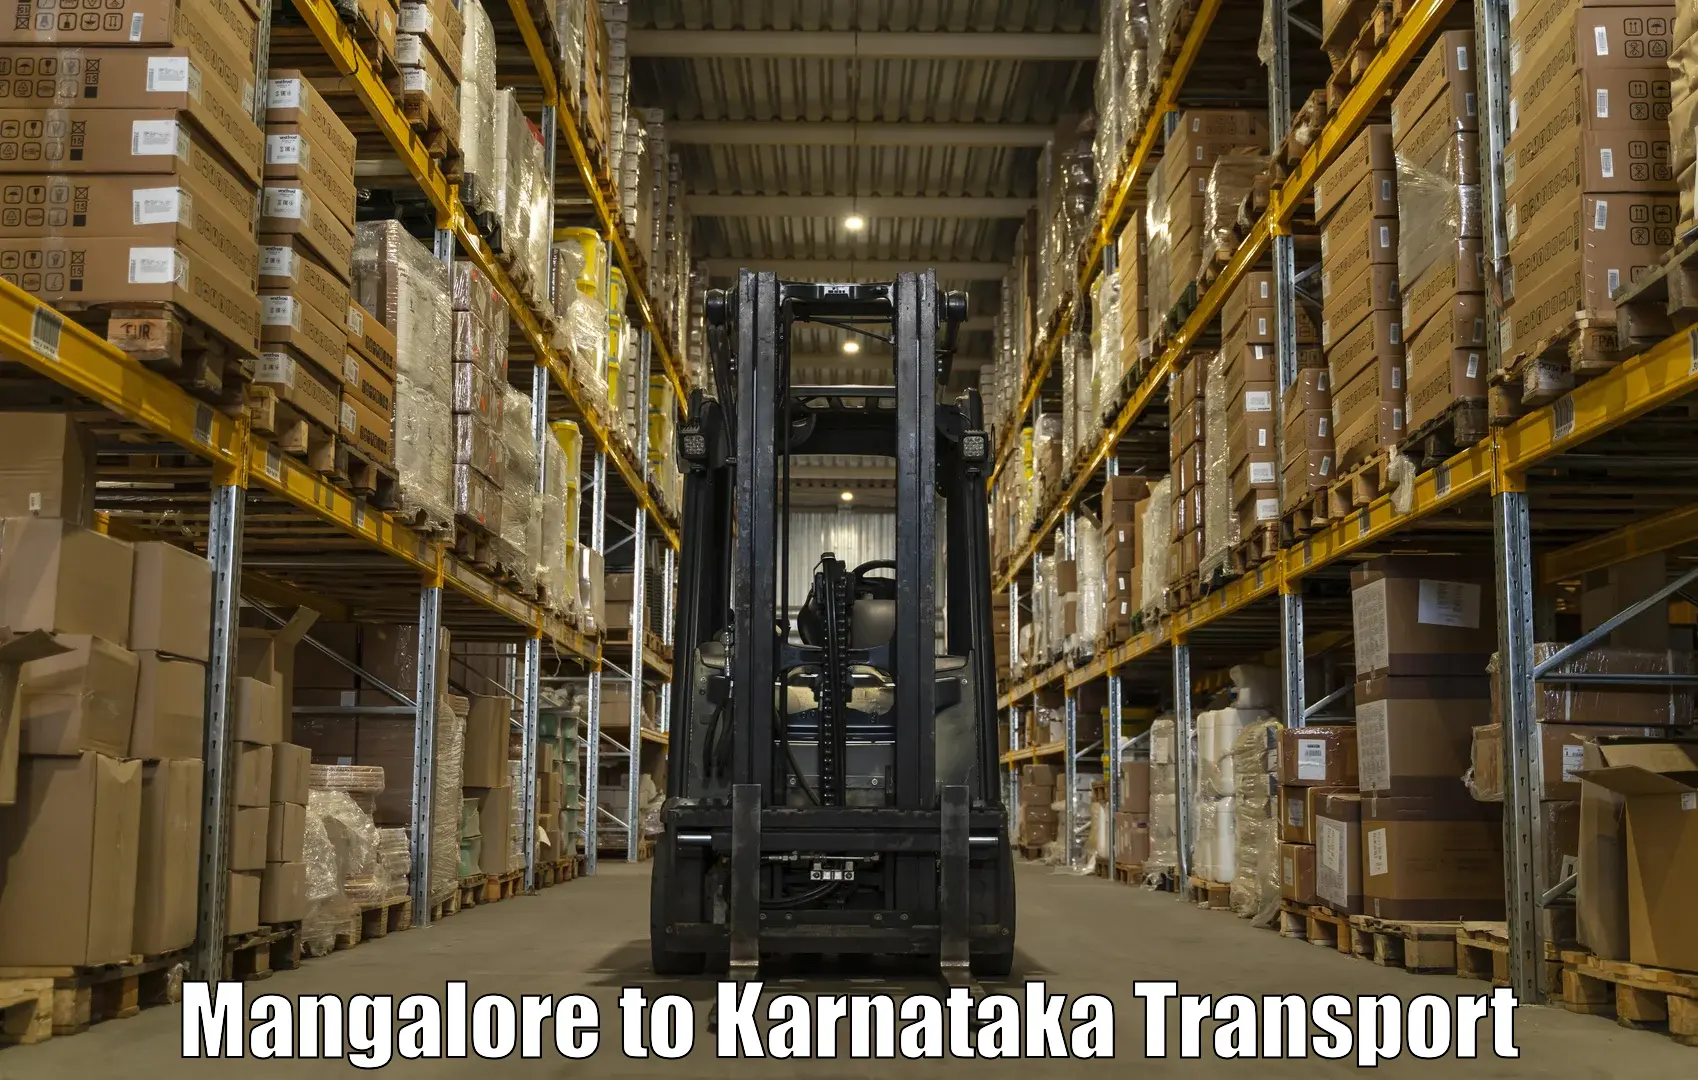 Nearby transport service Mangalore to Bangarapet